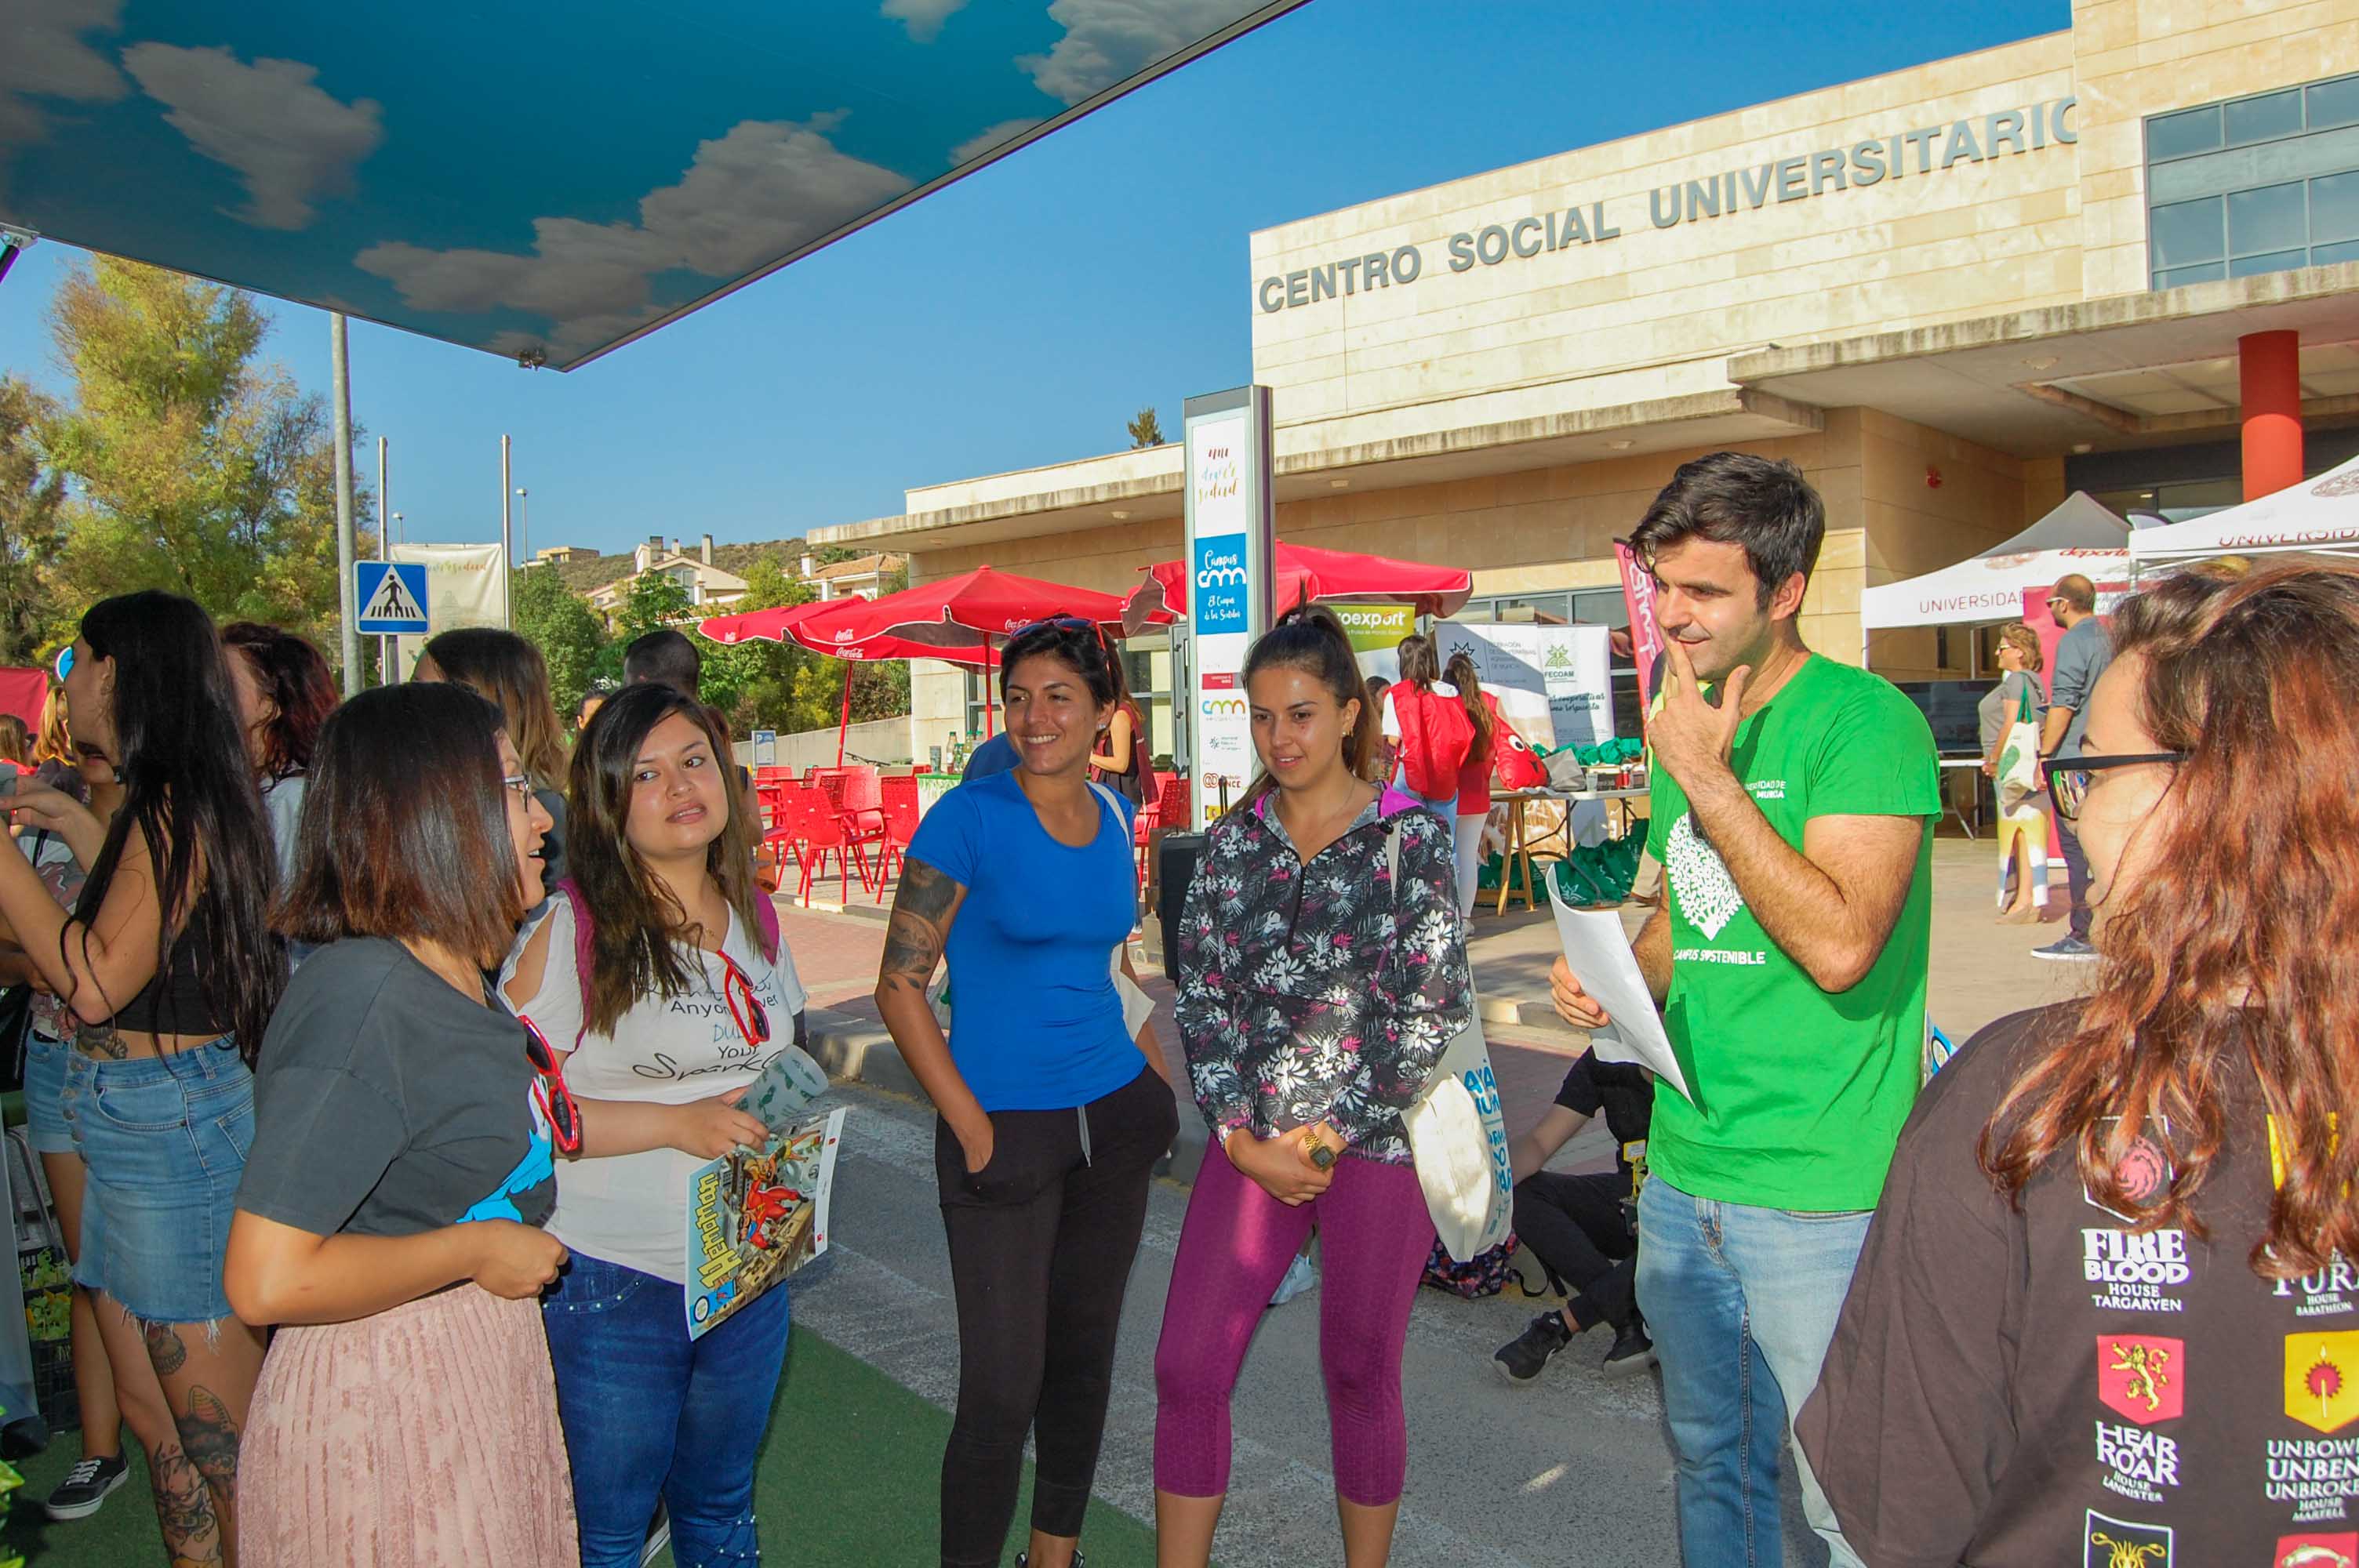 Campus Sostenible en la Feria Saludable organizada por REUS-UMU